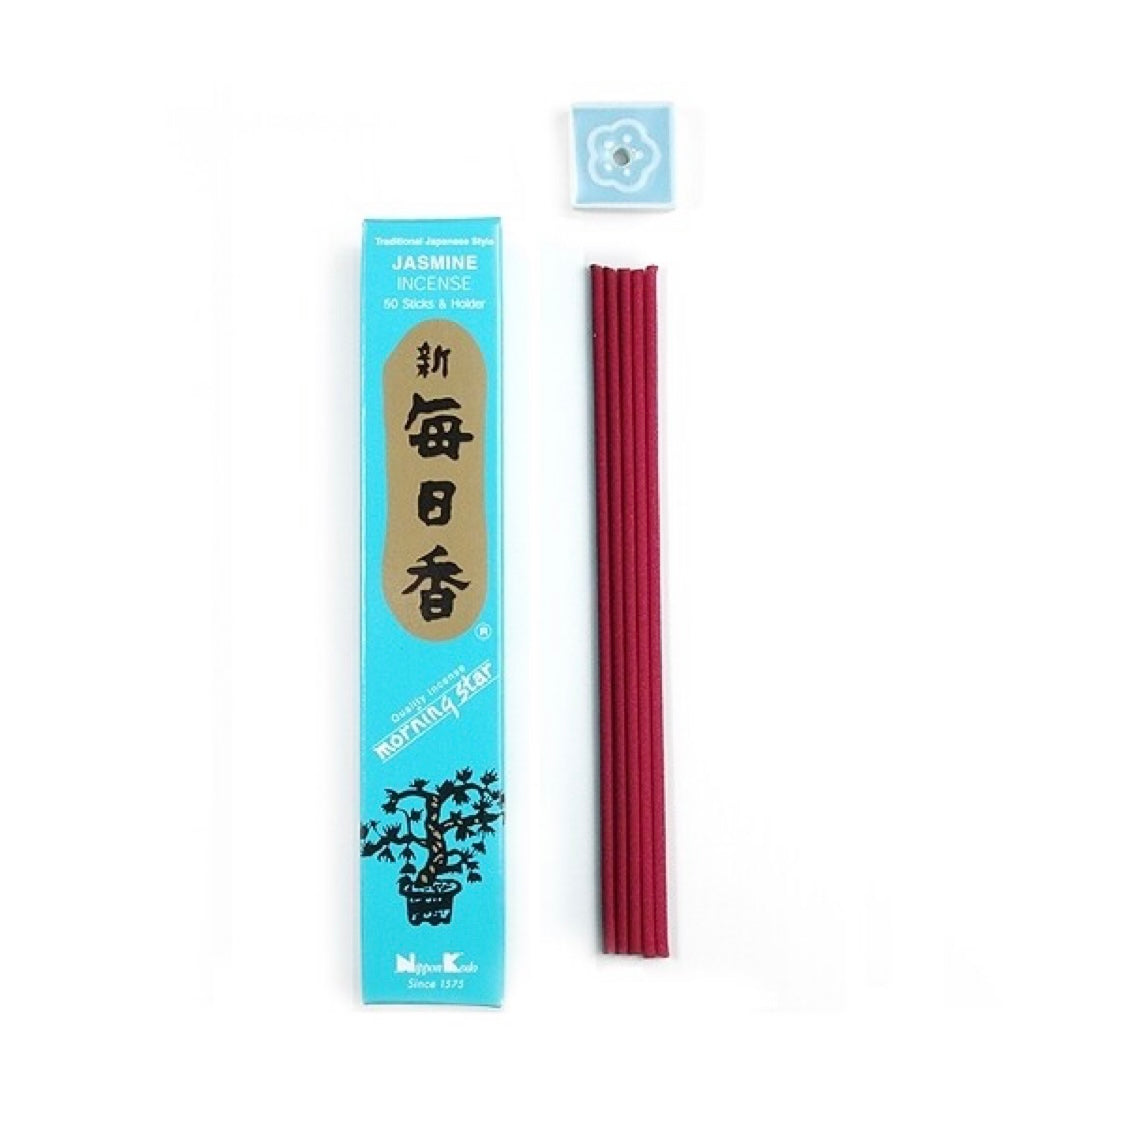 Morning Star Jasmin incenso giapponese in bastoncini - 50 stick